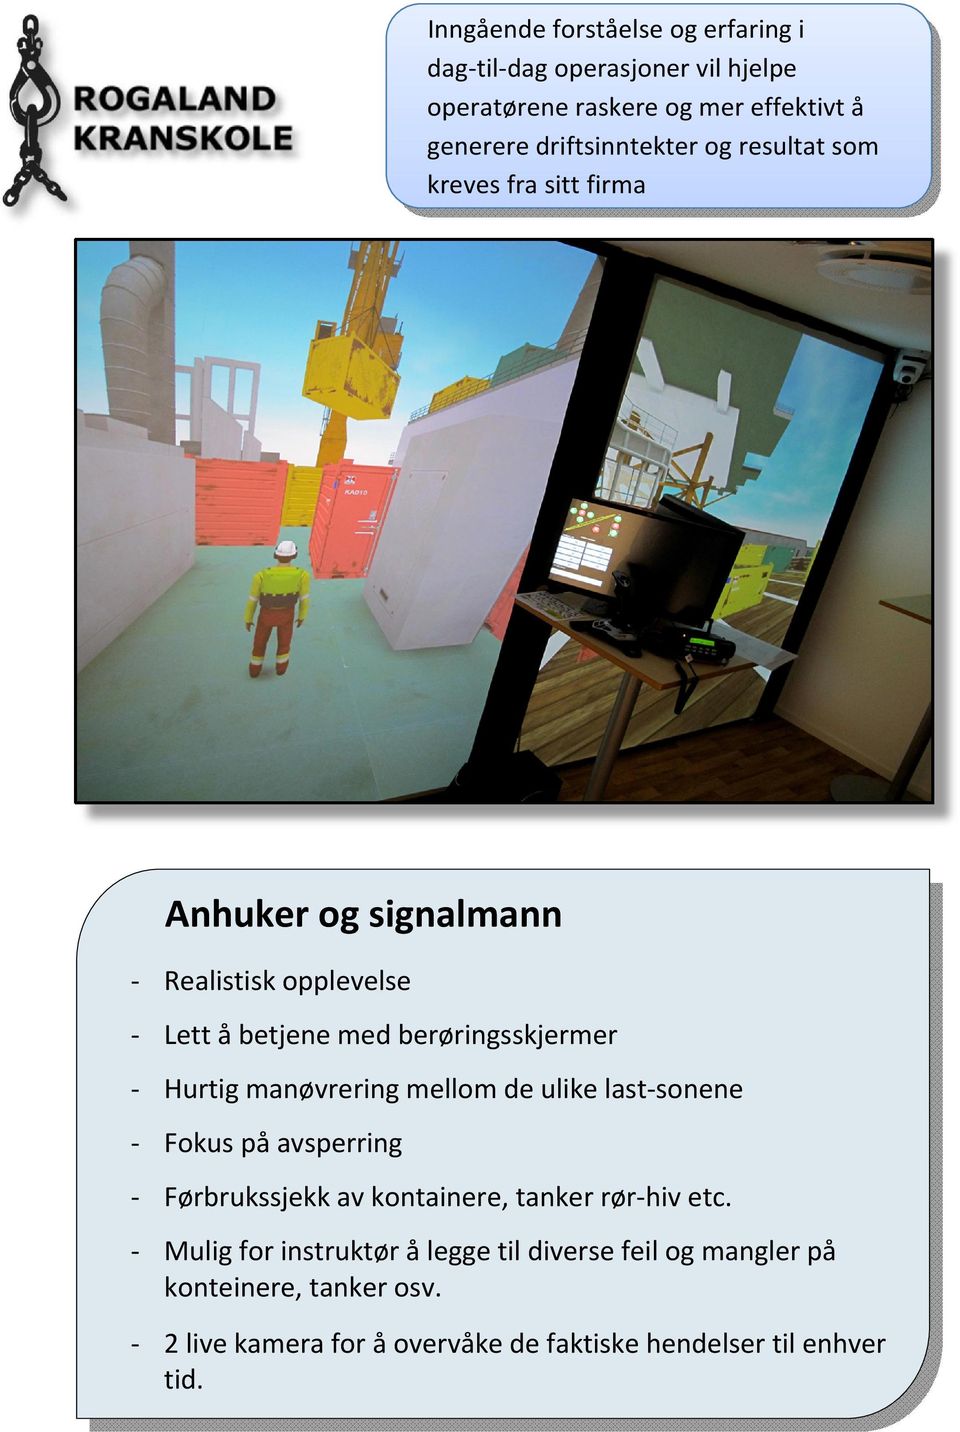 Lettåbetjenemedberøringsskjermer Hurtigmanøvreringmellomdeulikelastsonene Fokuspåavsperring